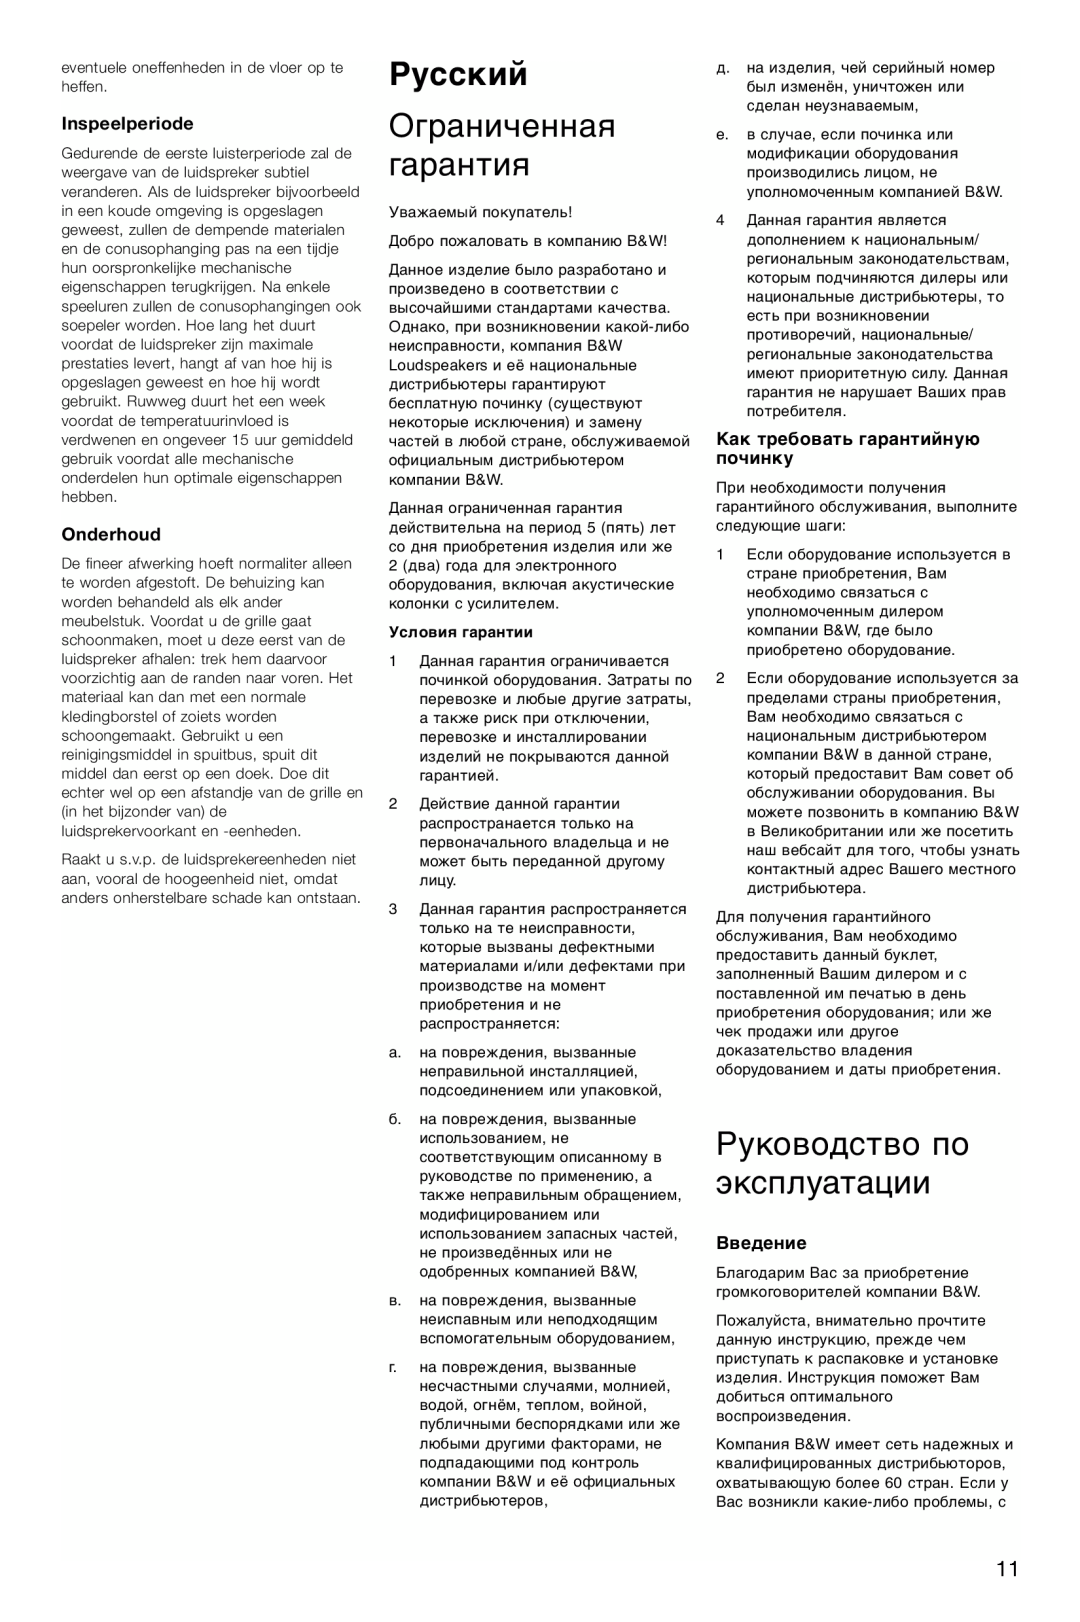 Bowers & Wilkins CM2 Русский, Ограниченная гарантия, Руководство по эксплуатации, Inspeelperiode, Onderhoud, Введение 